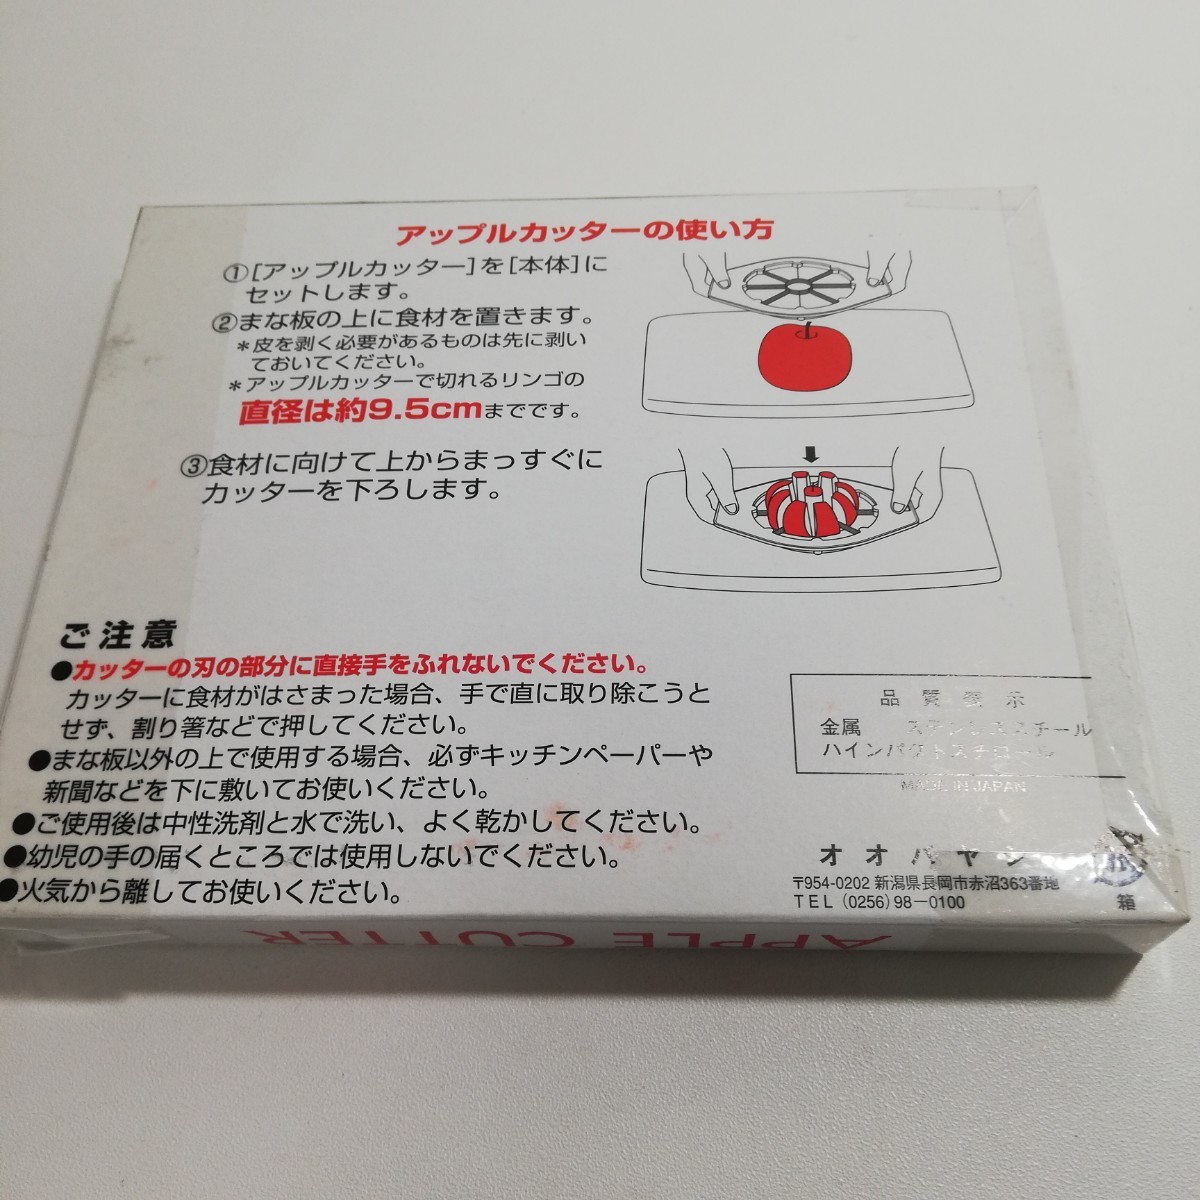 オオバヤシ アップルカッター ホワイト 未使用品 日本製 MADE IN JAPAN [キッチン用品 キッチンアクセサリー]_画像9